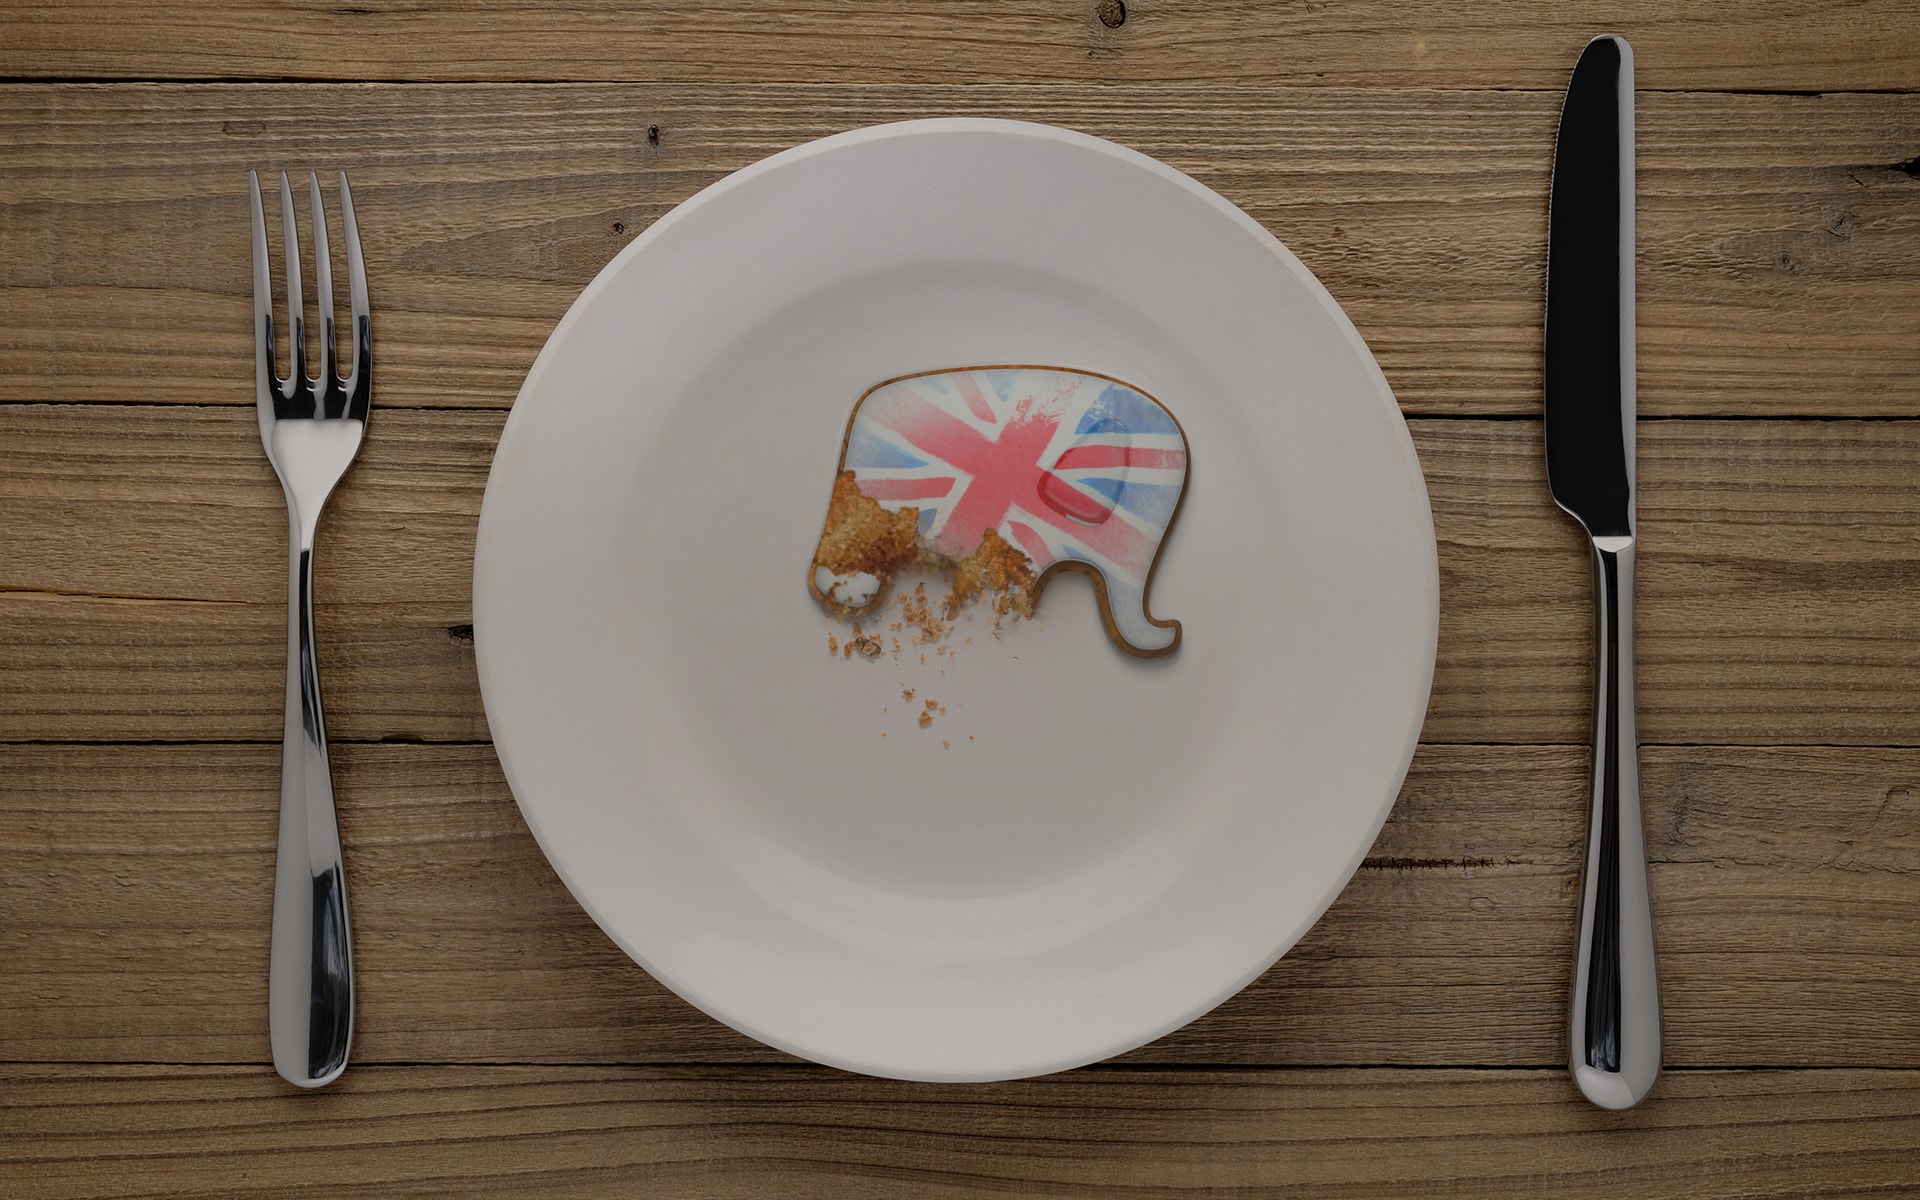 Elephant on a plate